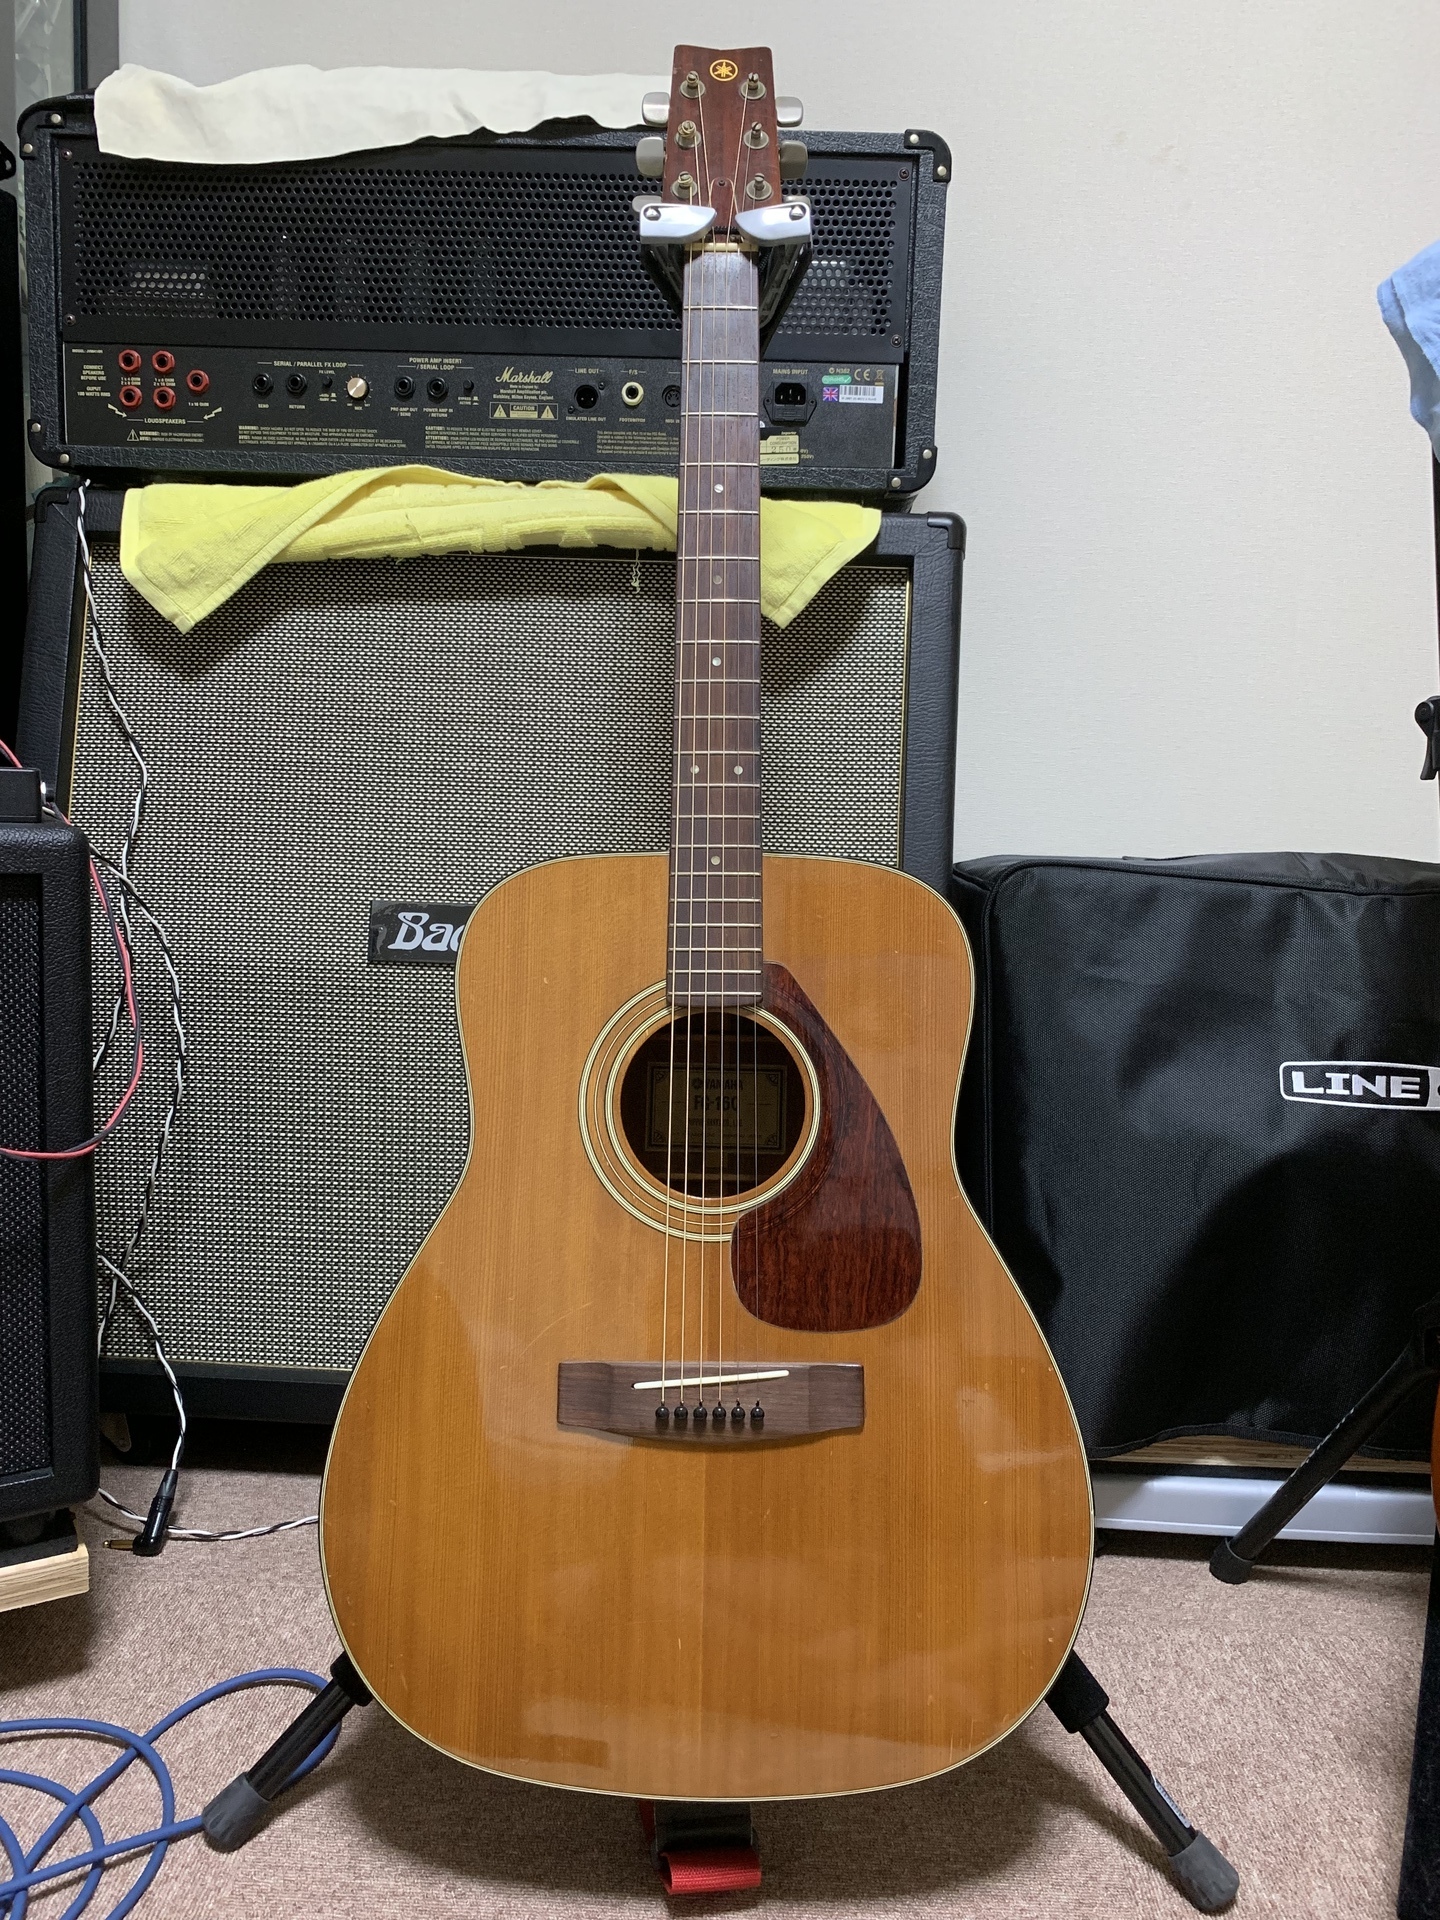 アコースティックギター　FG-160